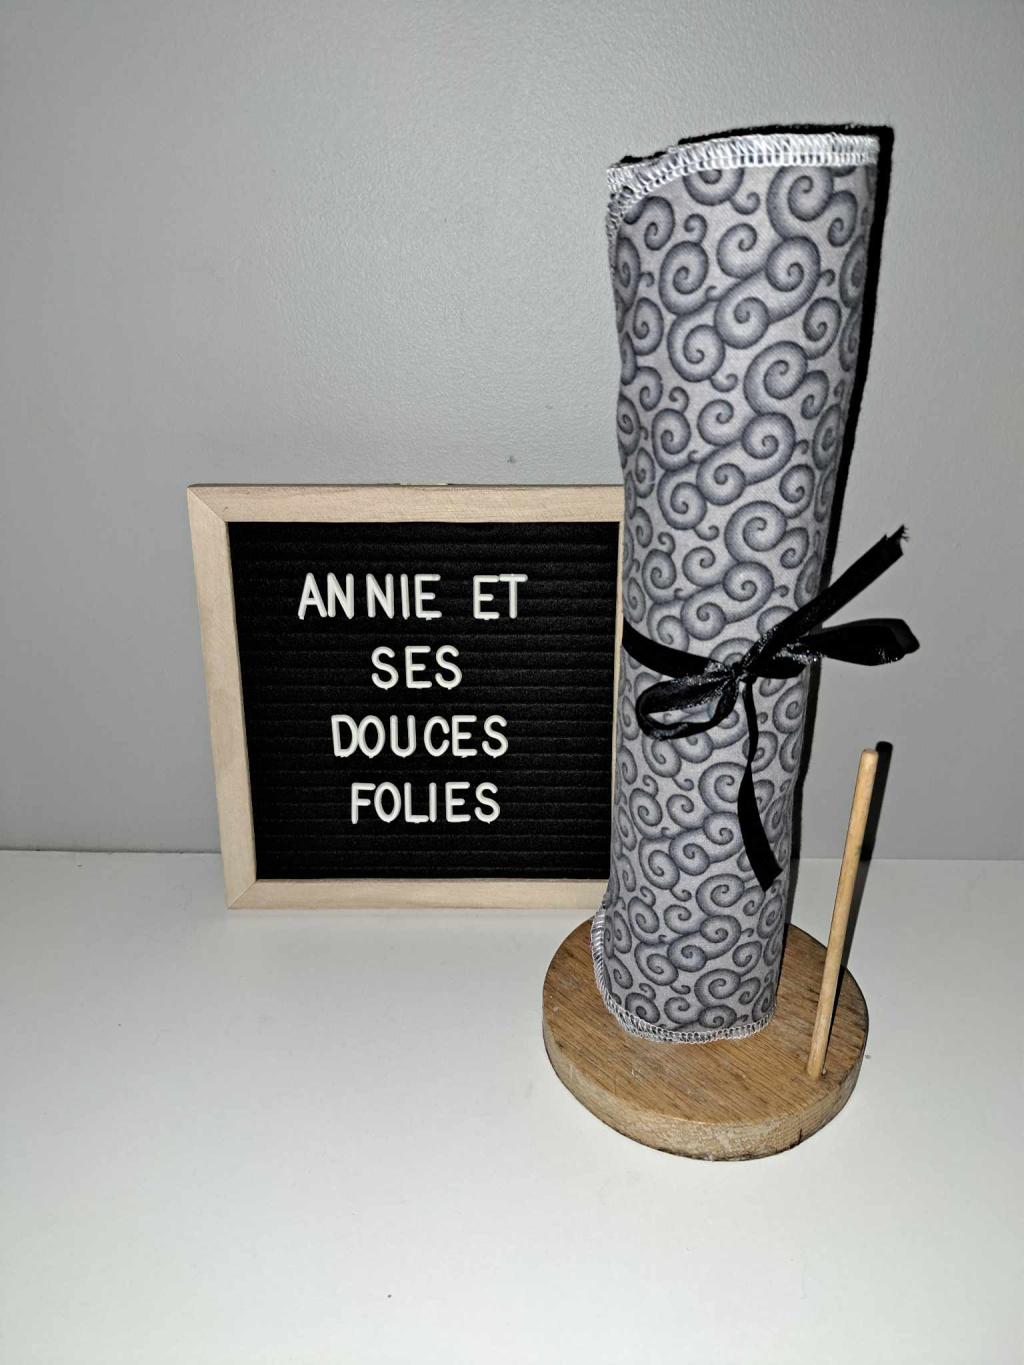 Encouragez local grâce à notre boutique en ligne gratuite pour les artisans du Québec tel que Annie et ses douces folies. Annie et ses douces folies est un artisan du Québec offrant des produits artisanaux québécois de qualité.